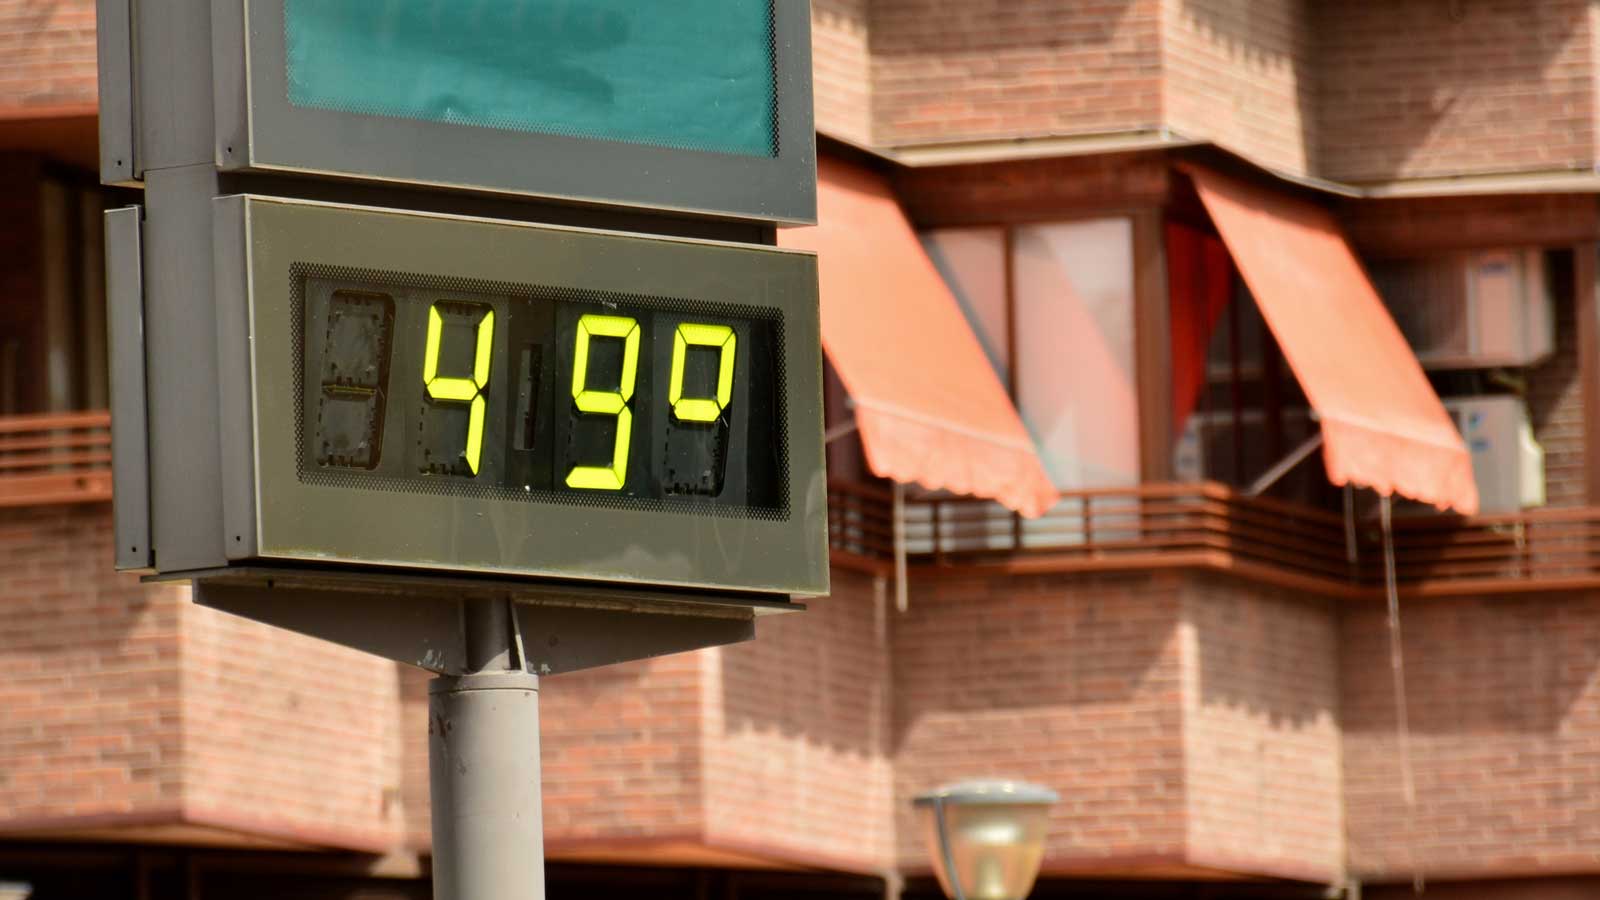 Desafiando o calor: A revolução urbana frente às altas temperaturas